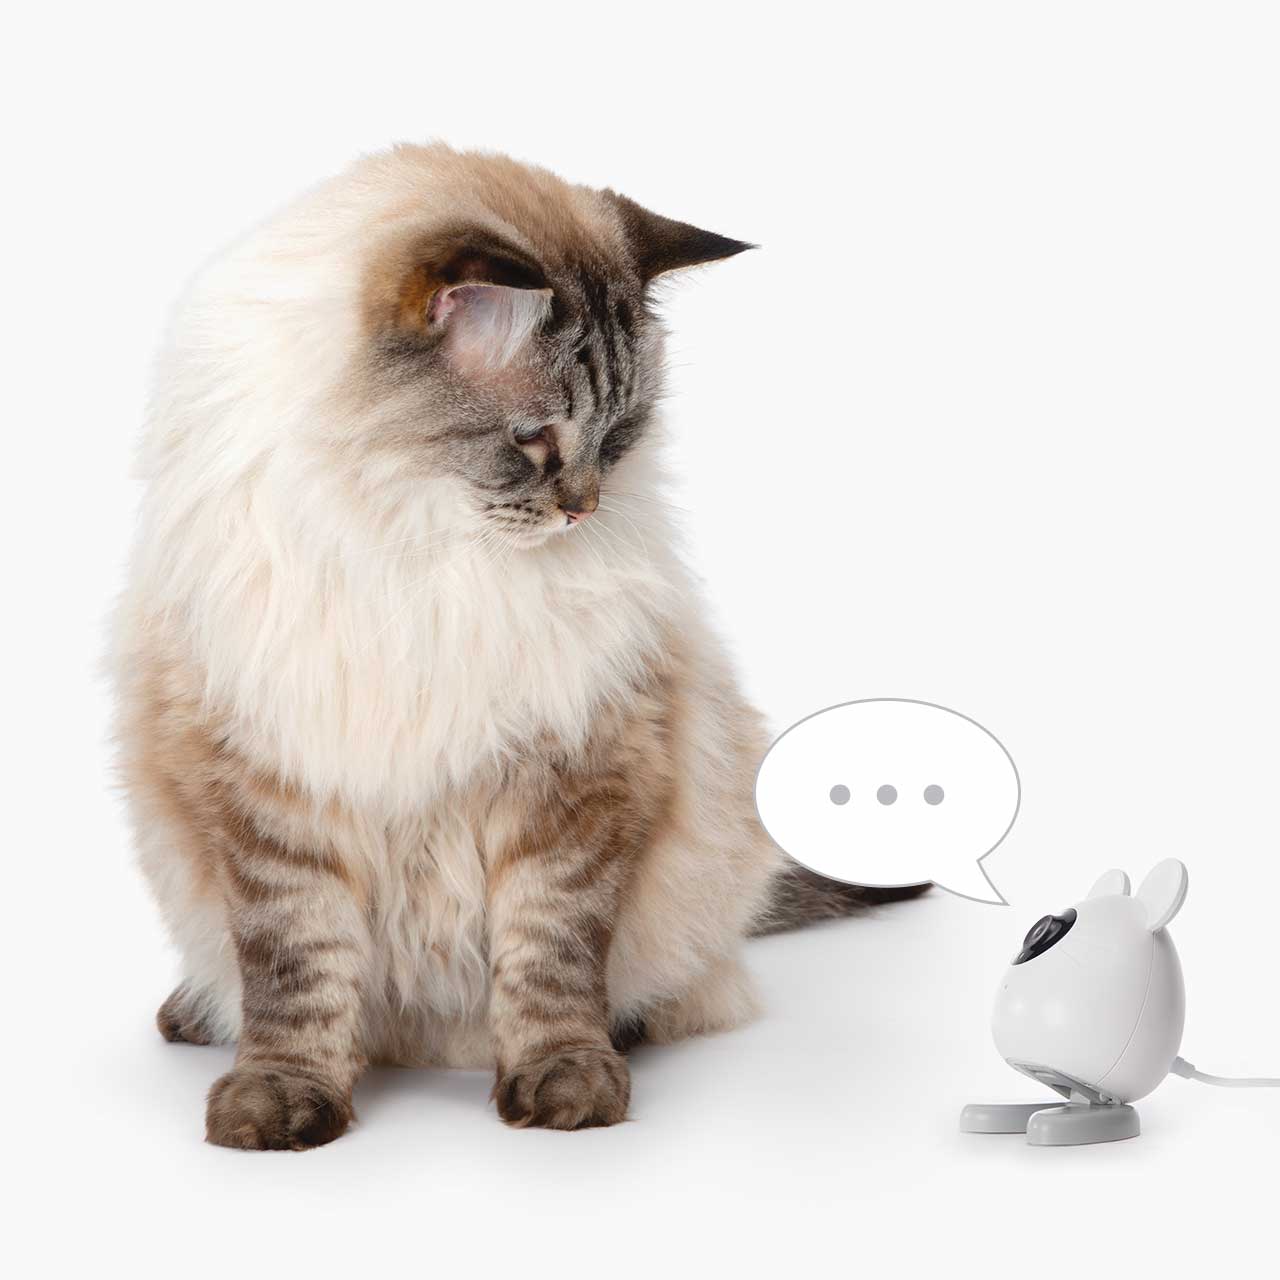 Audio bidirectionnel - Parlez à votre chat